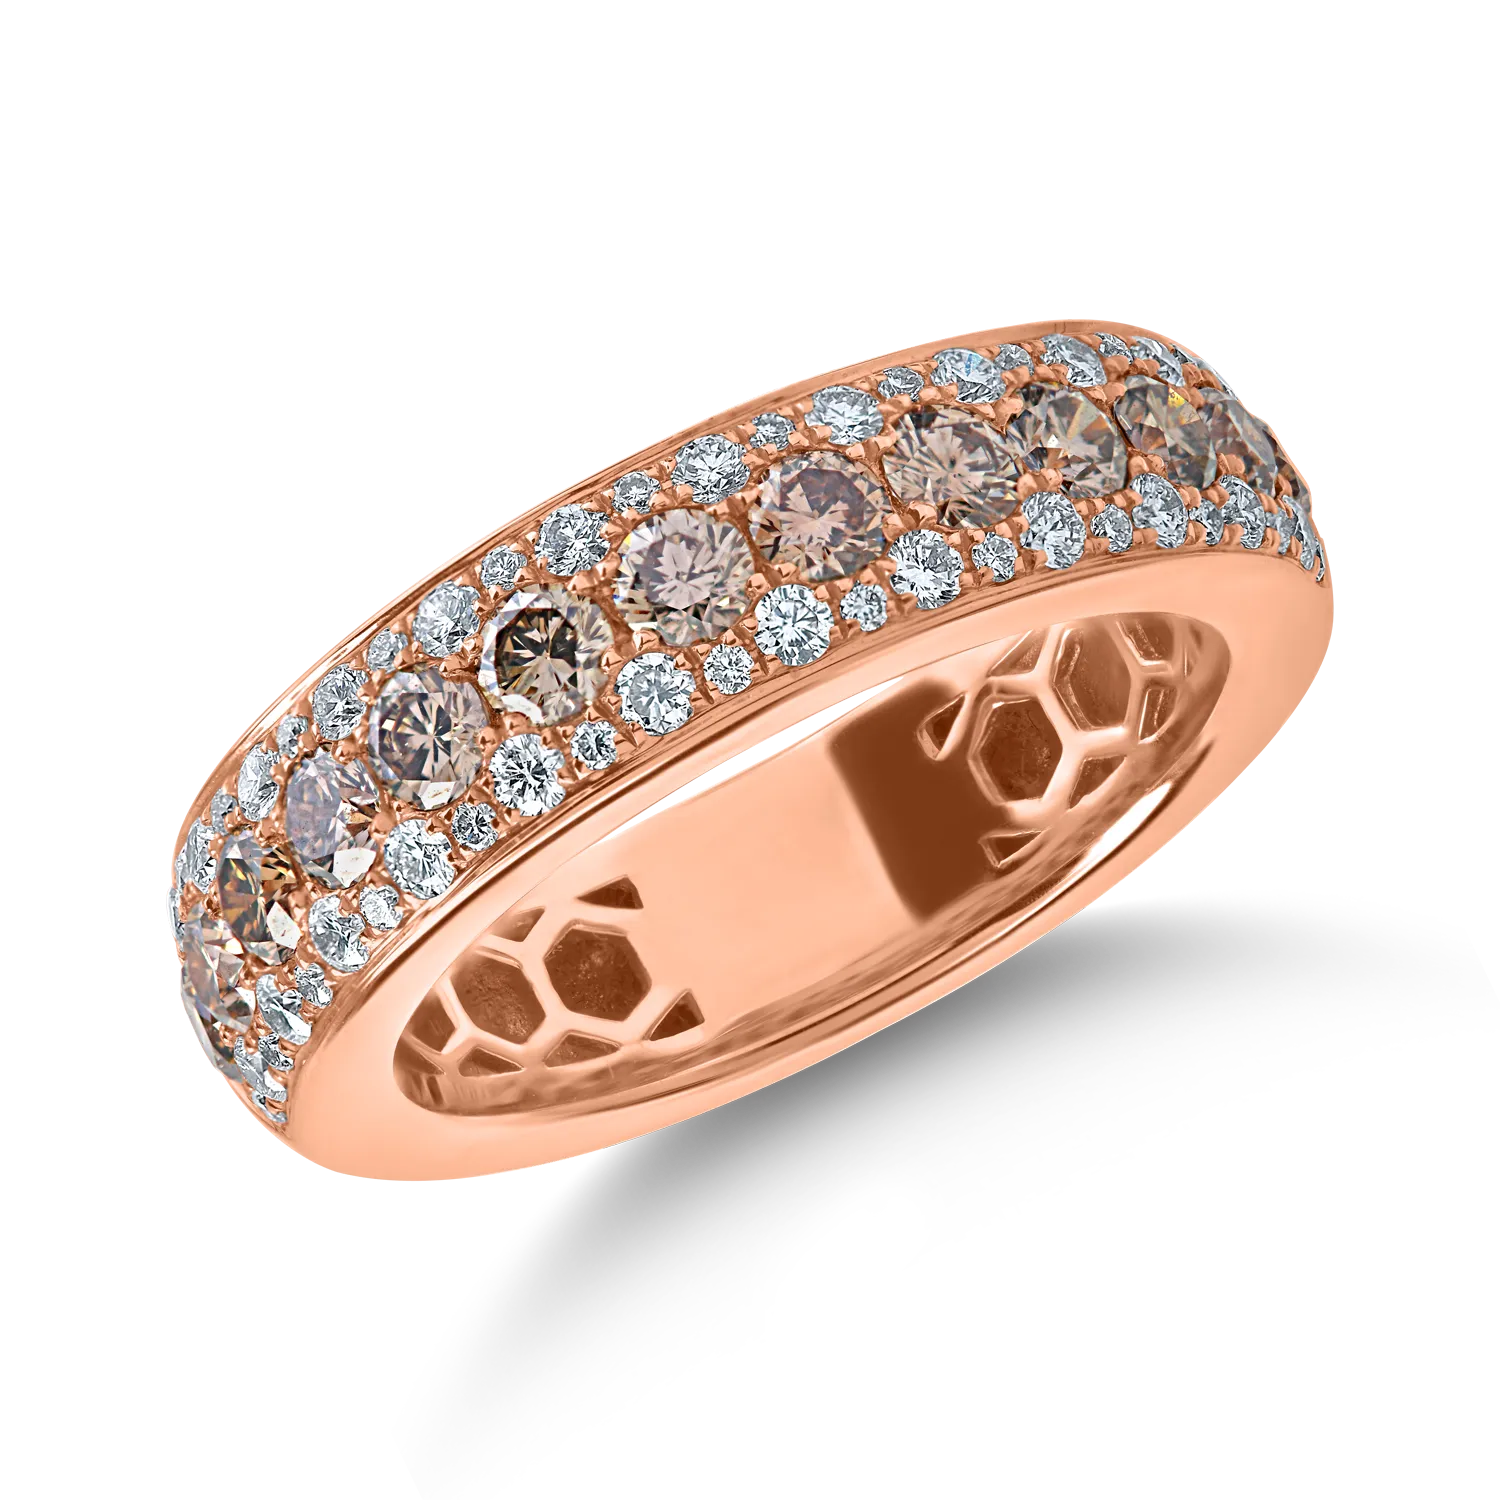 Pierścionek z mikronastawą w kolorze różowego złota z brązowymi diamentami o masie 0.9ct i przezroczystymi diamentami o masie 0.3ct